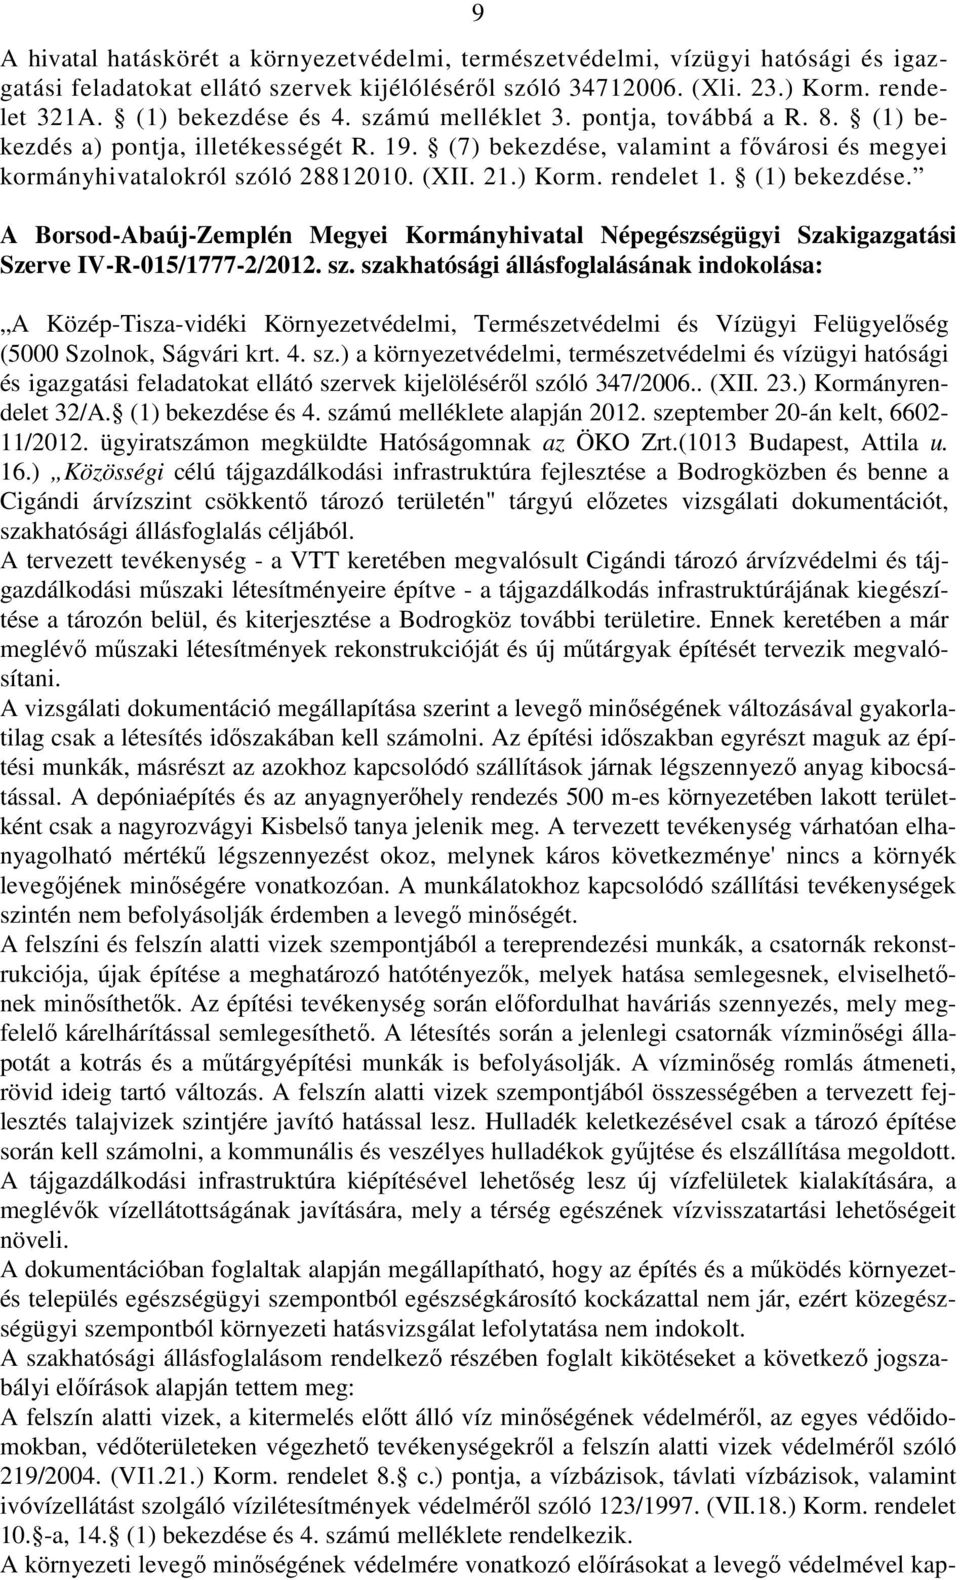 (1) bekezdése. A Borsod-Abaúj-Zemplén Megyei Kormányhivatal Népegészségügyi Szakigazgatási Szerve IV-R-015/1777-2/2012. sz.